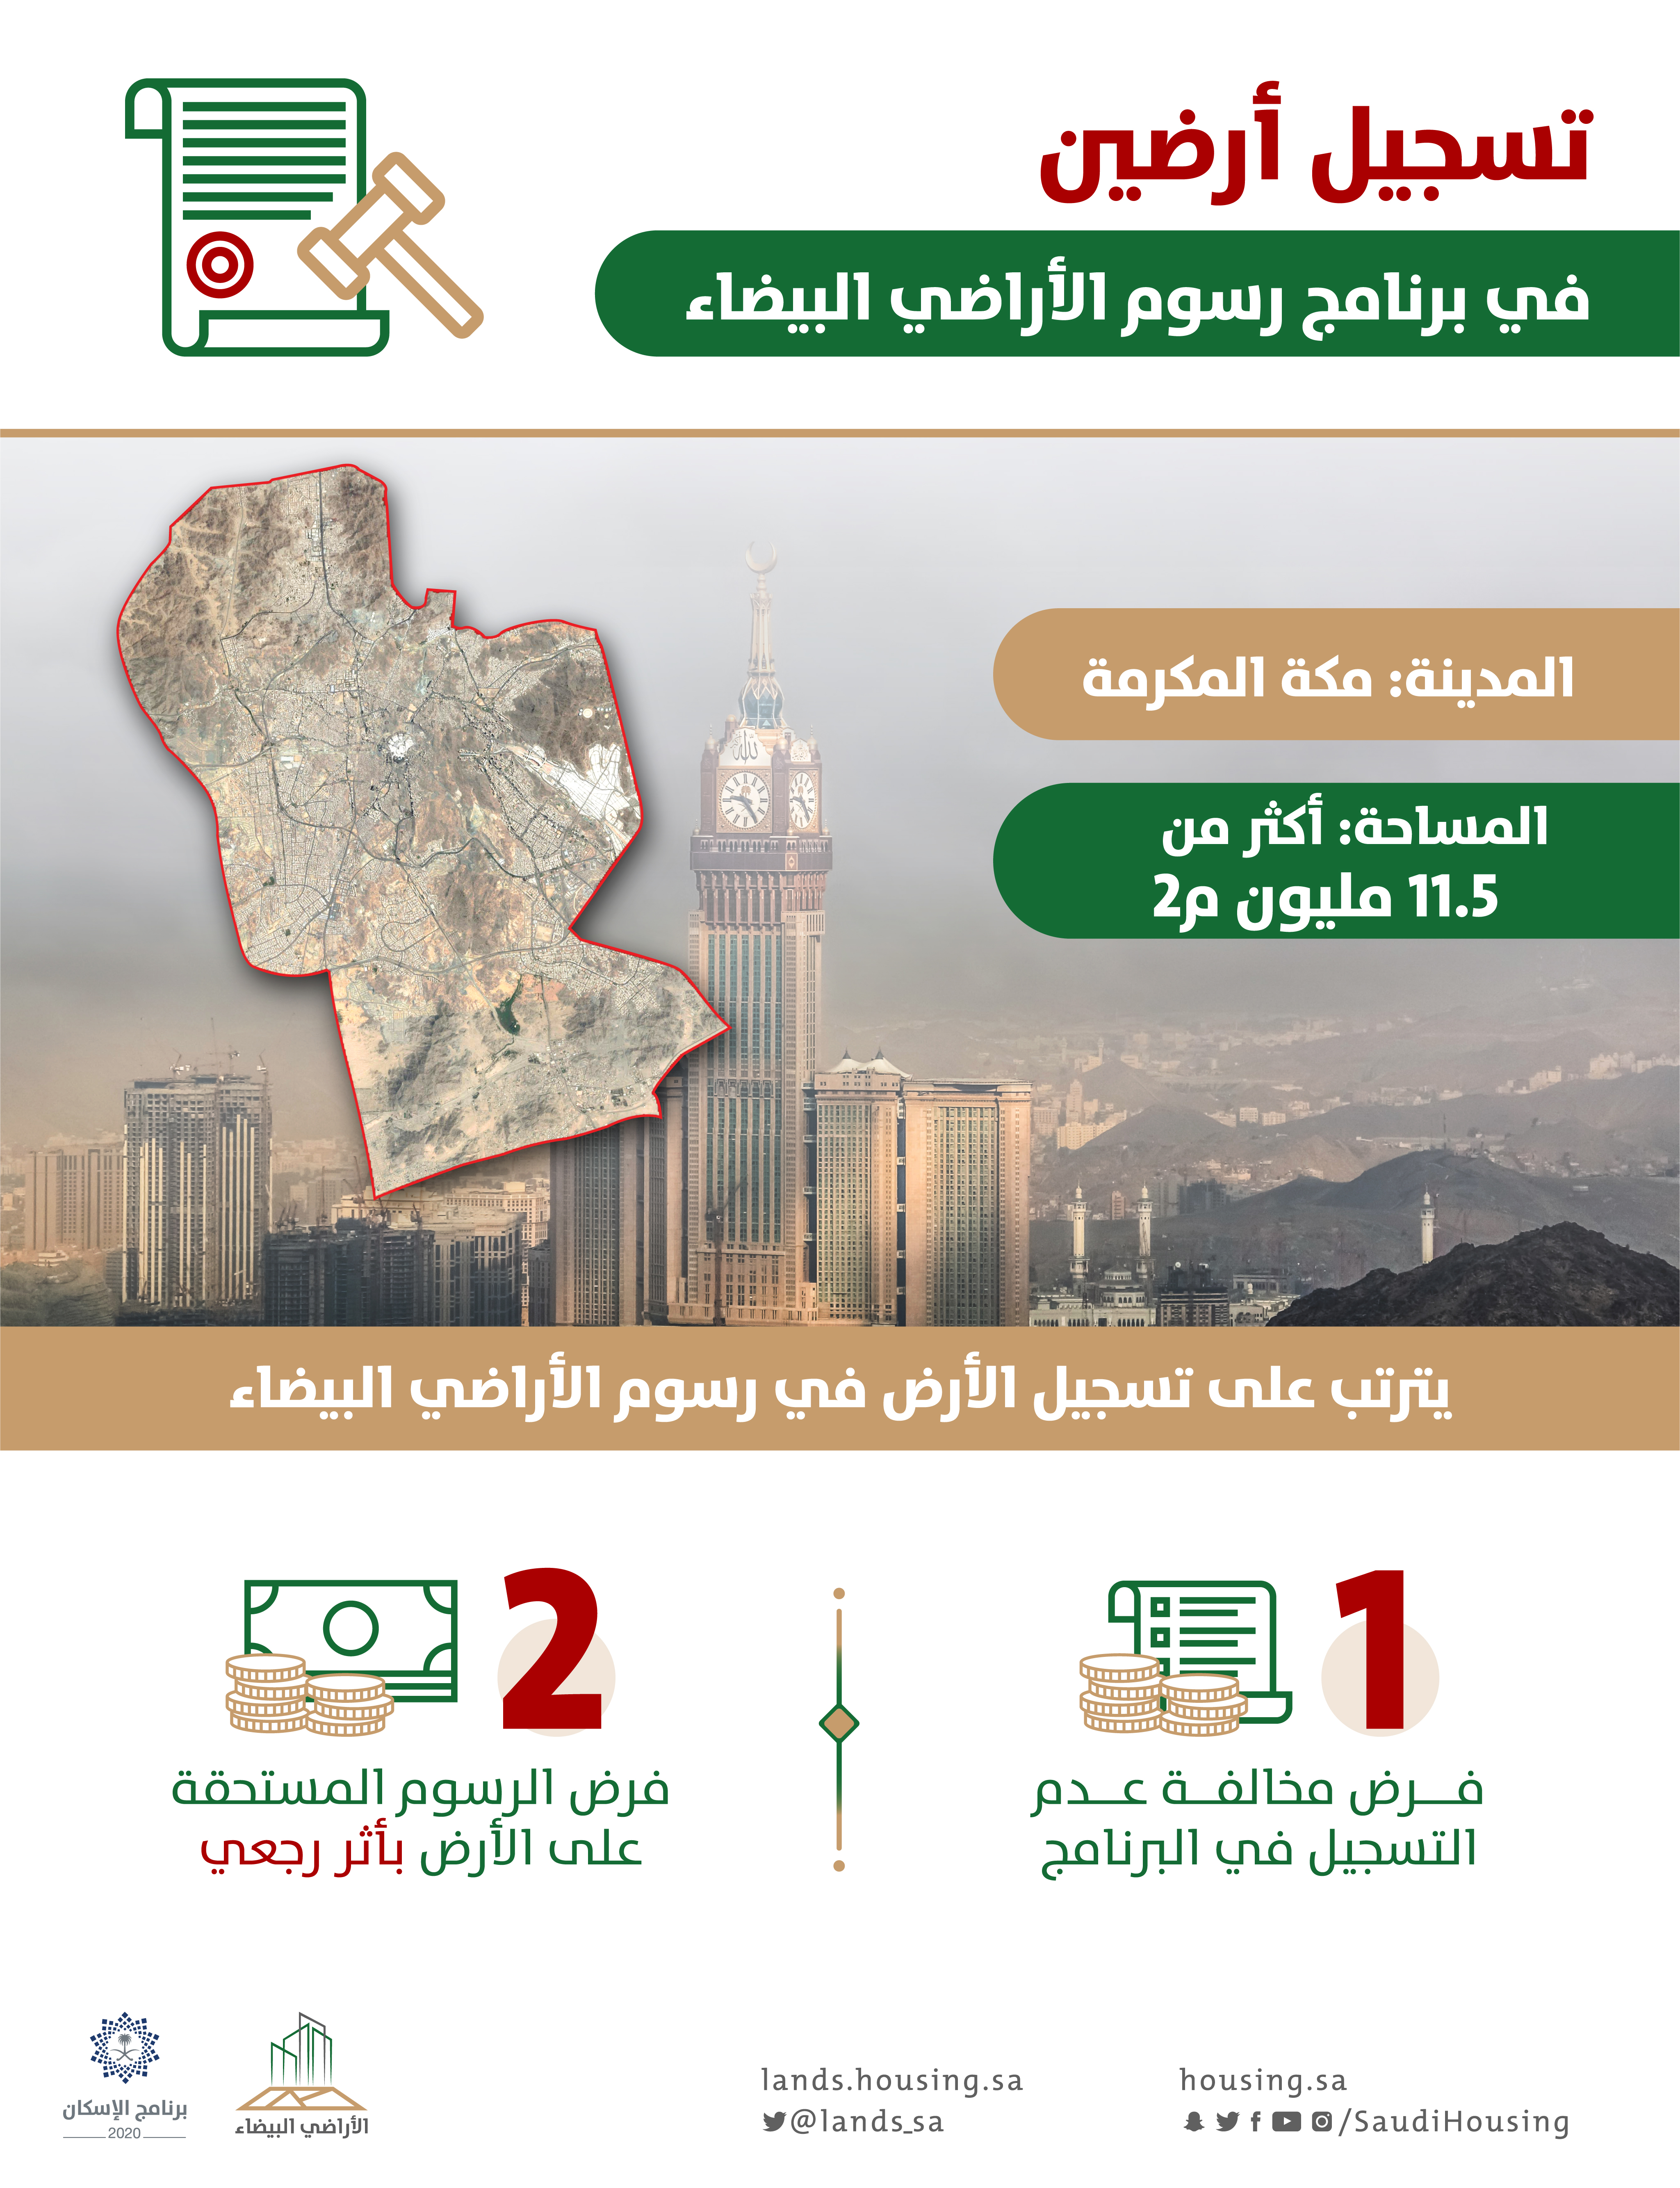 "الأراضي البيضاء": تسجيل أرضين بمساحة 11,5 مليون م2 وفرض الرسوم عليها بأثر رجعي في مكة المكرمة